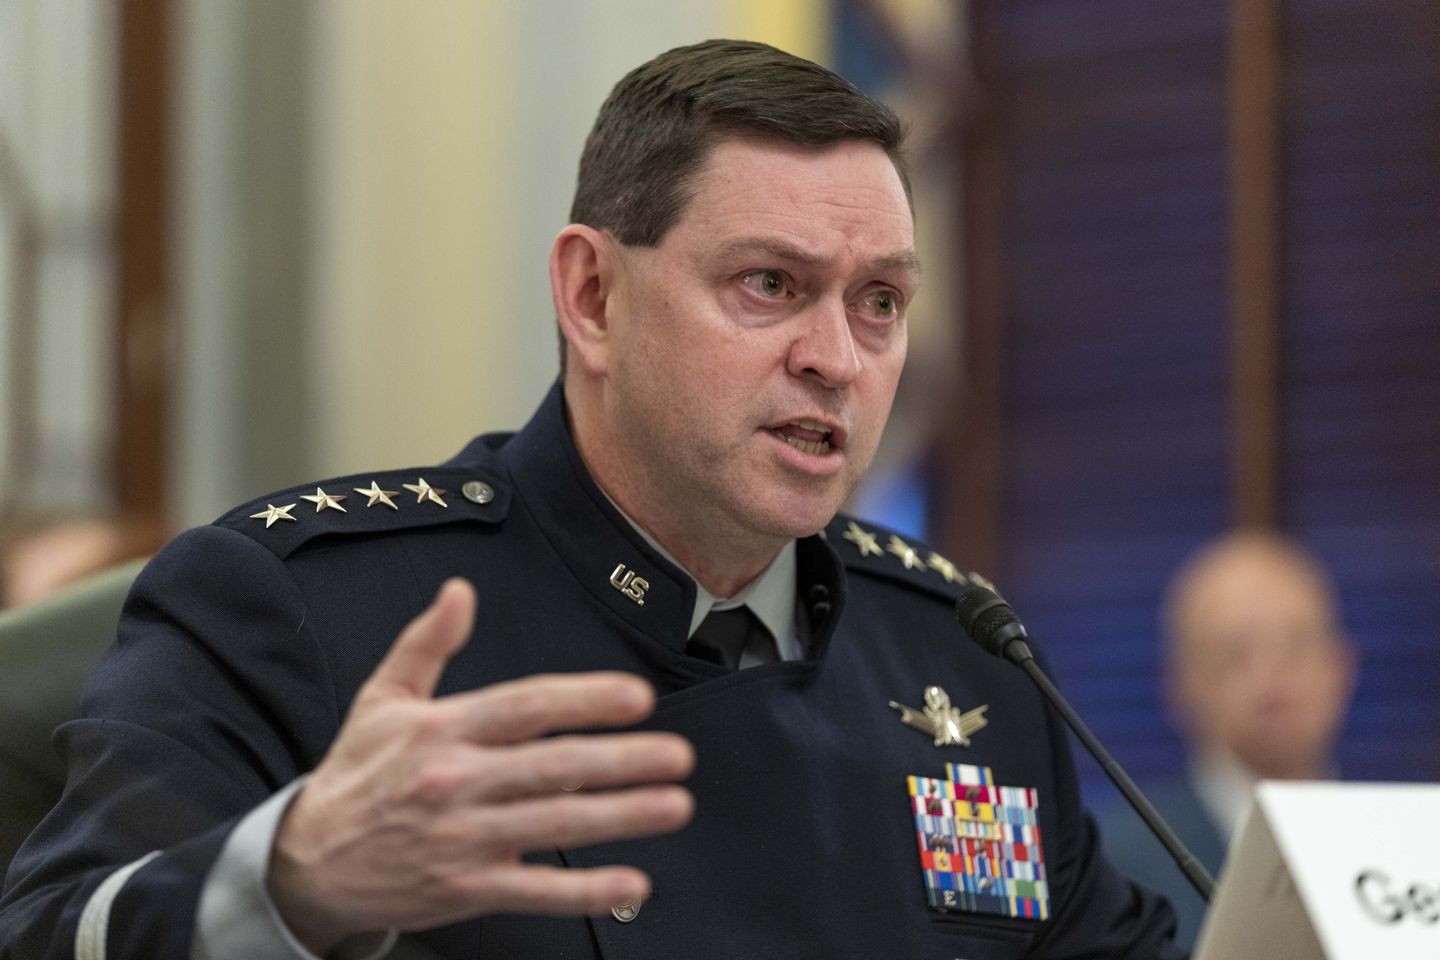 Kepala Angkatan Luar Angkasa memperingatkan Cina, Rusia mengerahkan senjata luar angkasa untuk menyerang satelit AS, pasukan